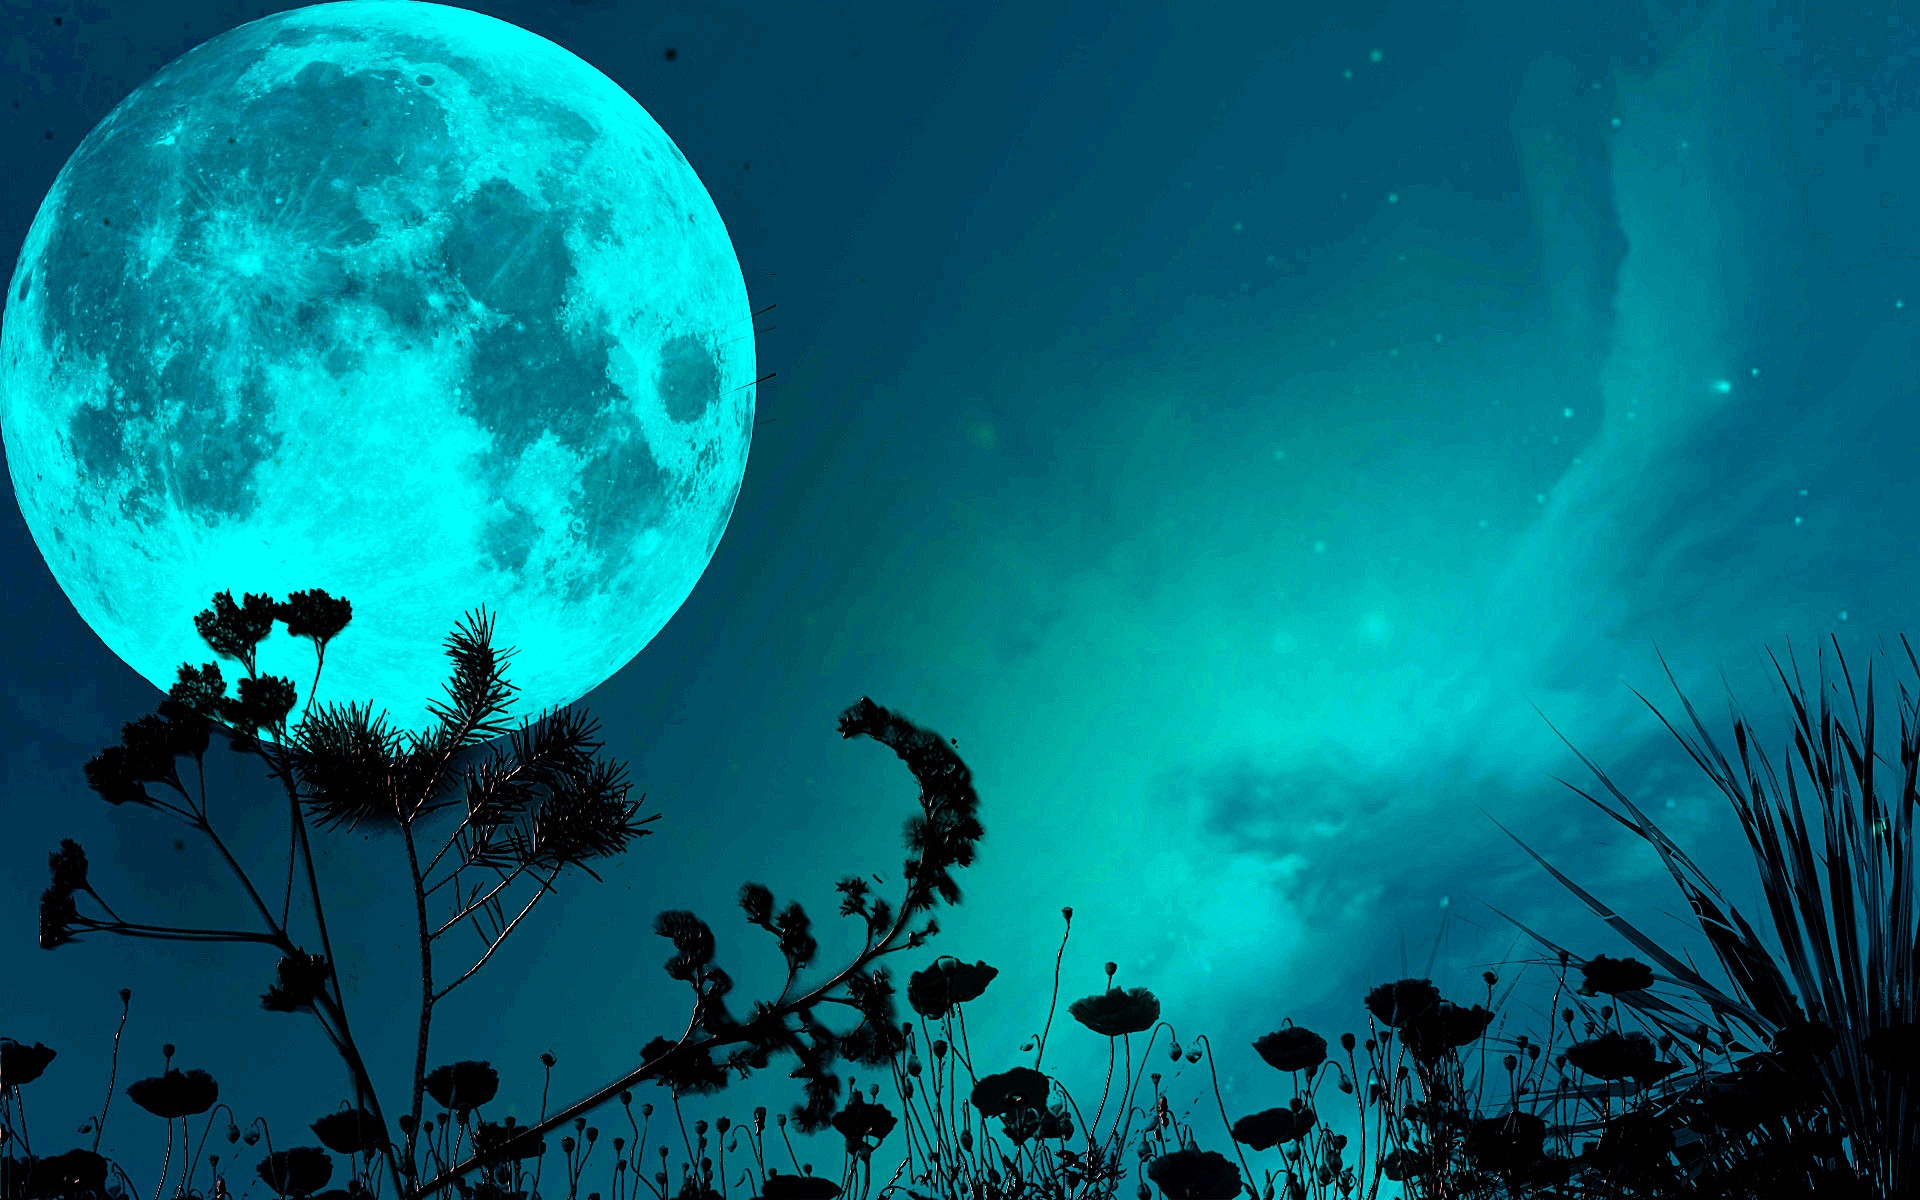 The blue moon HD Wallpapers | PixelsTalk.Net